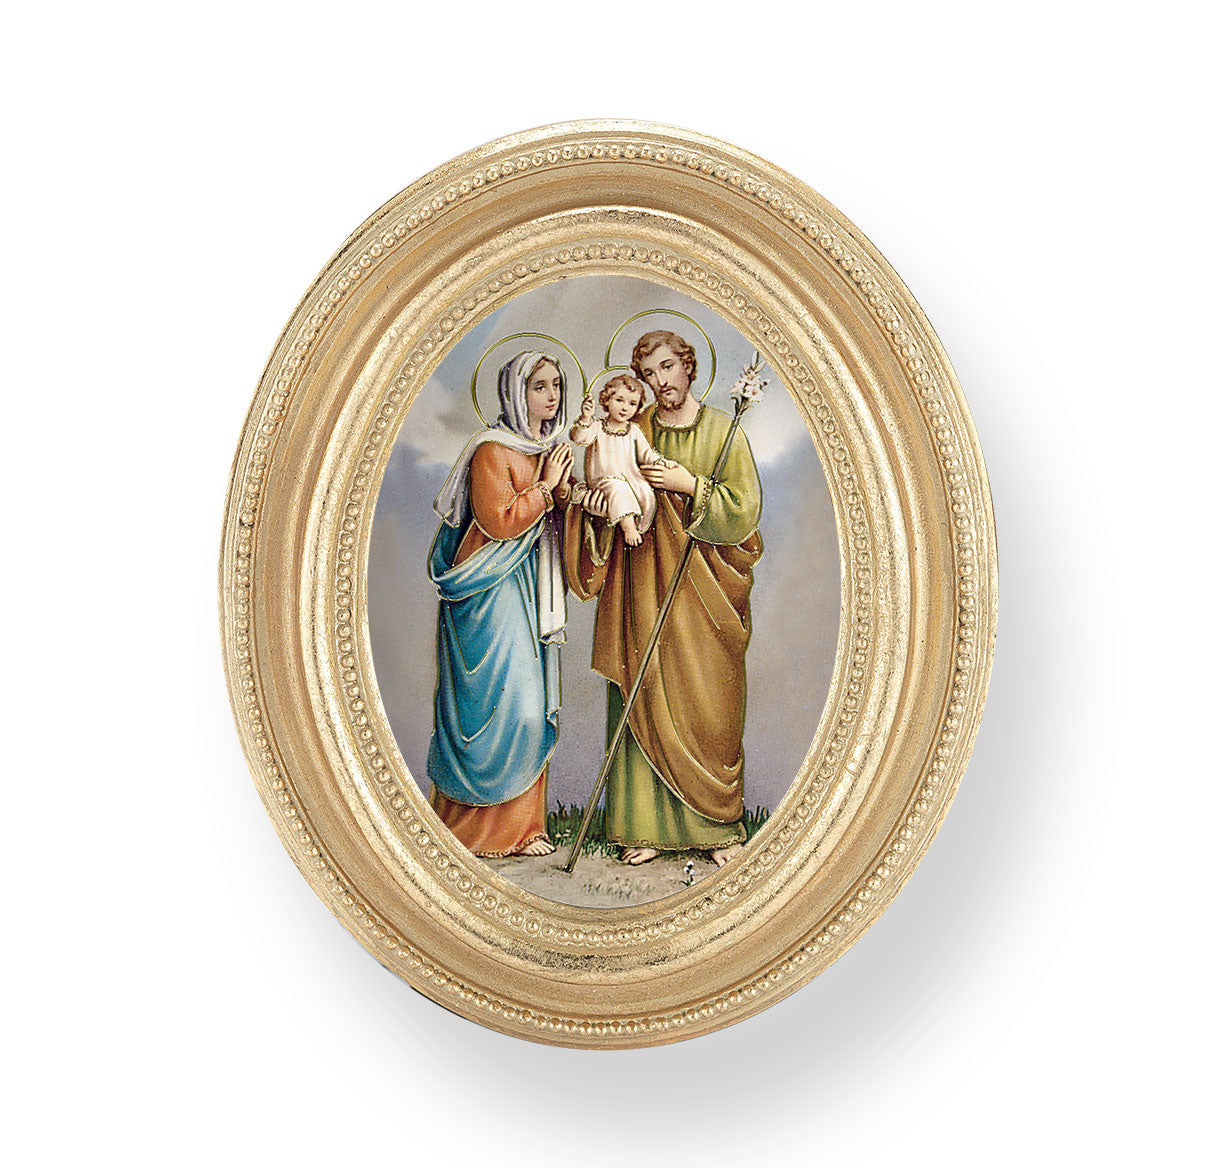 Holy Family Gold Framed Print